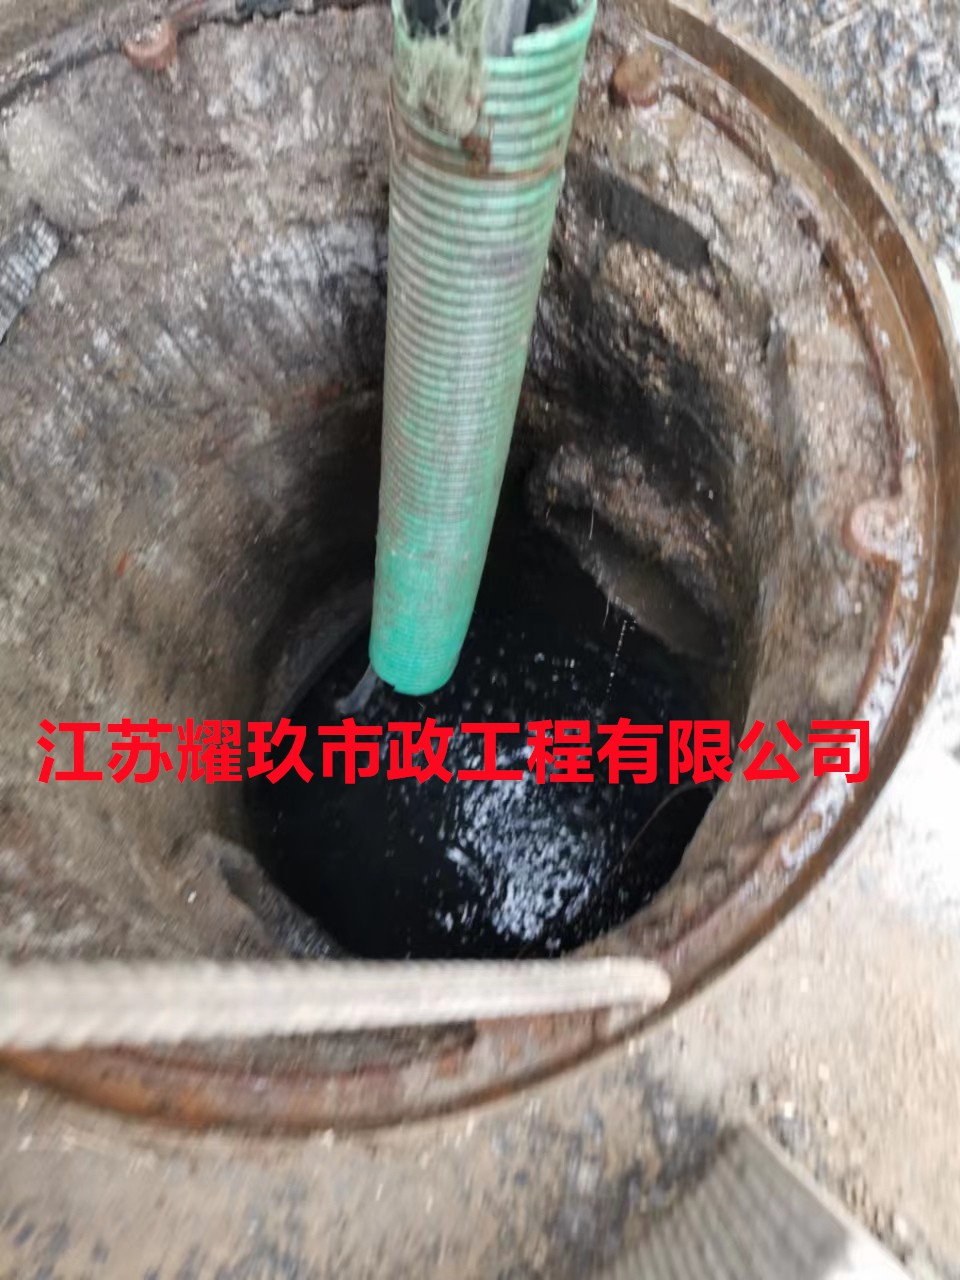 安徽省六安市雨污管道清理